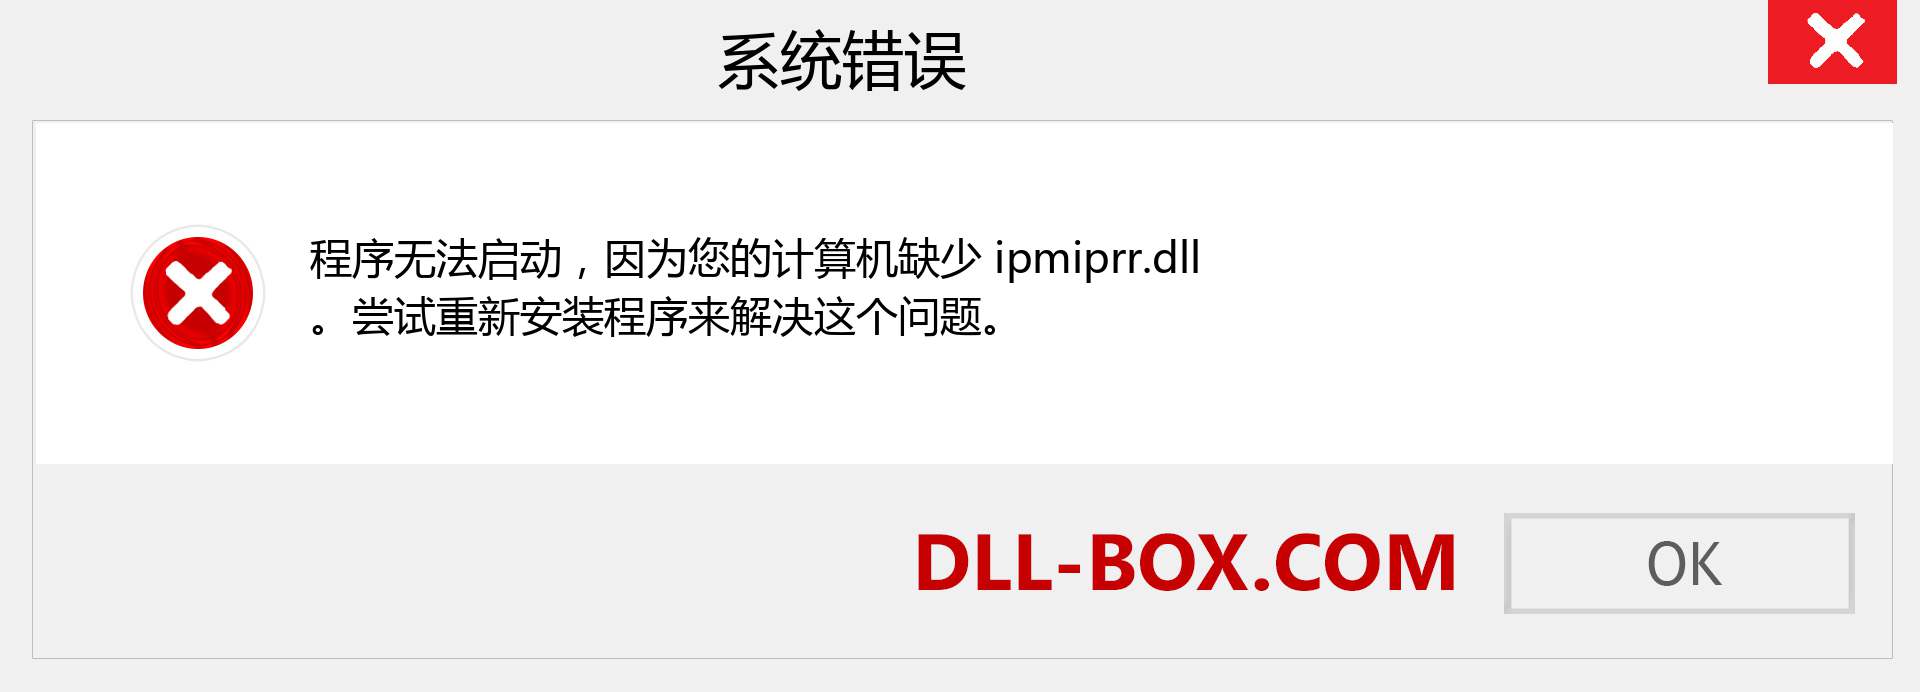 ipmiprr.dll 文件丢失？。 适用于 Windows 7、8、10 的下载 - 修复 Windows、照片、图像上的 ipmiprr dll 丢失错误